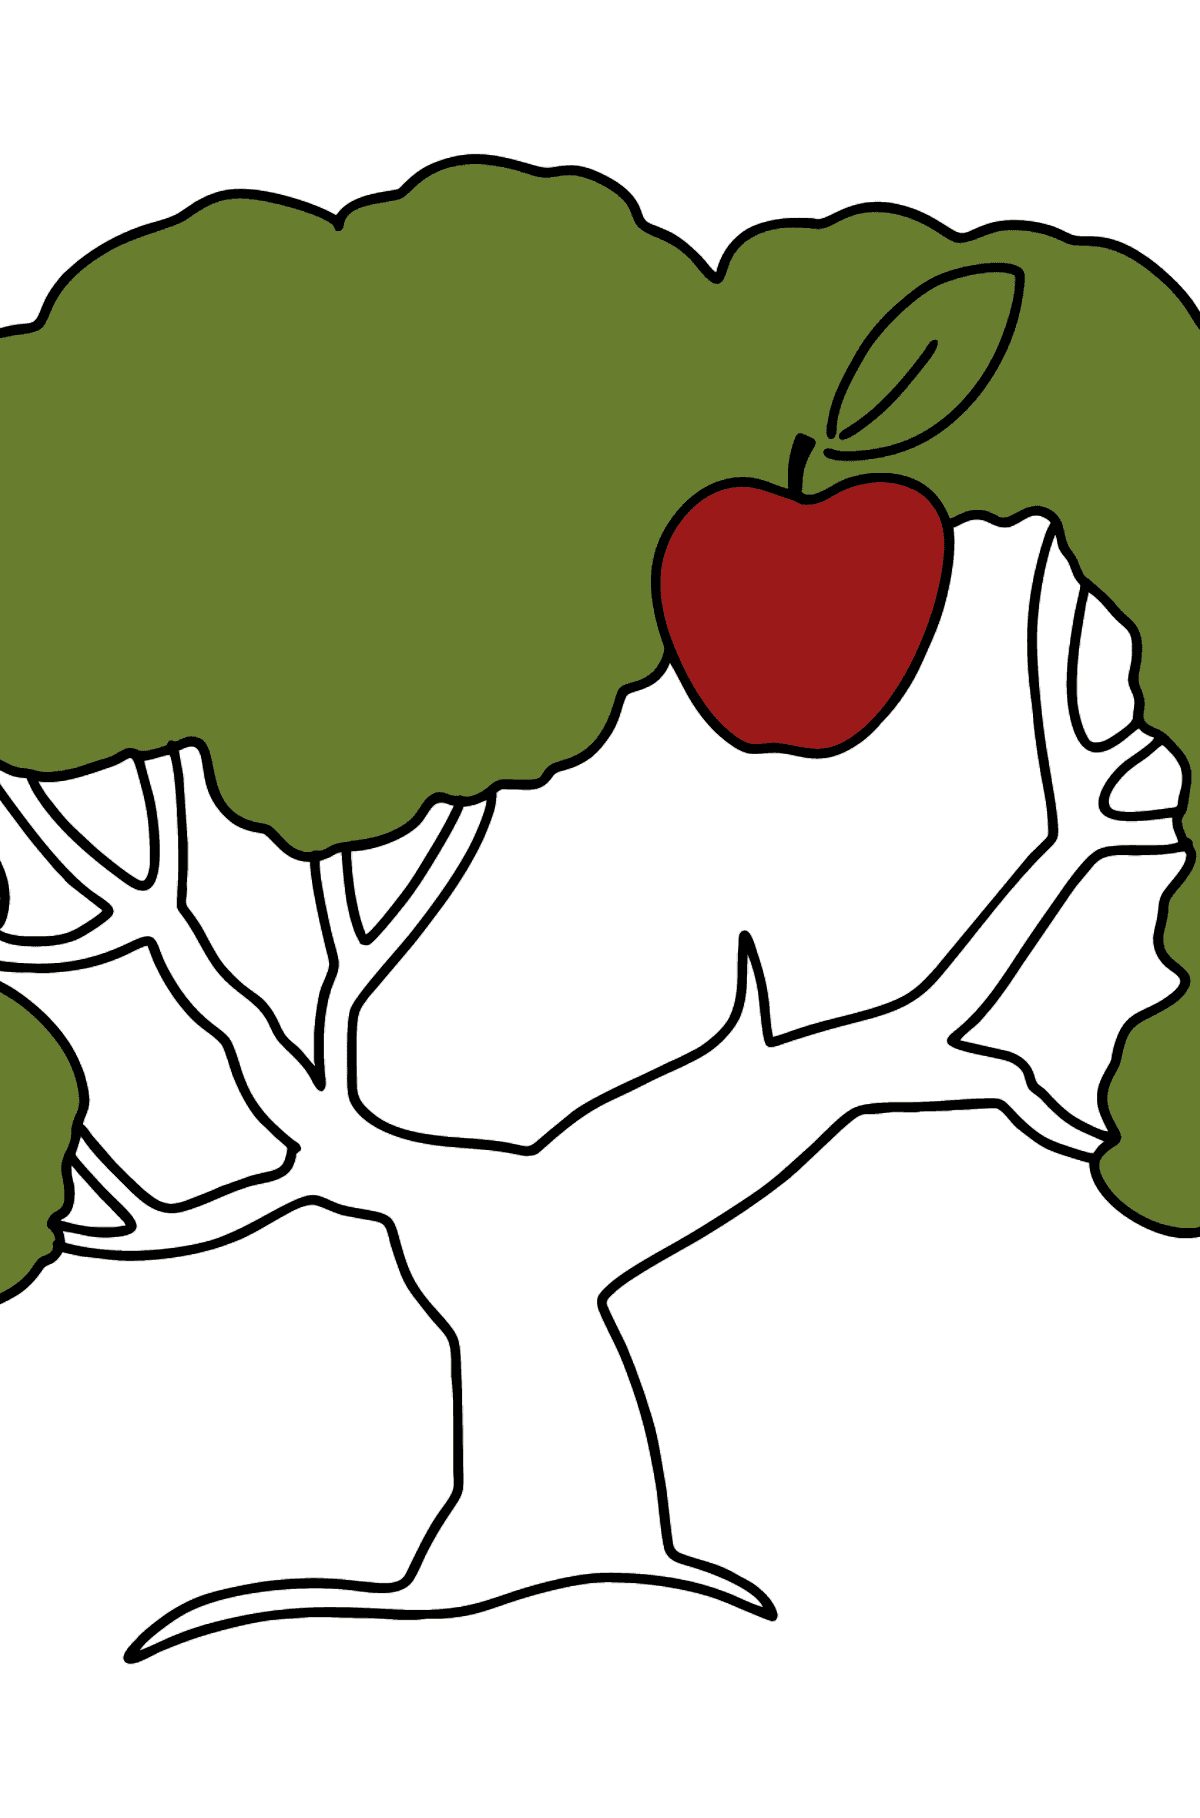 Desenho para colorir da Apple Tree - simples - Imagens para Colorir para Crianças